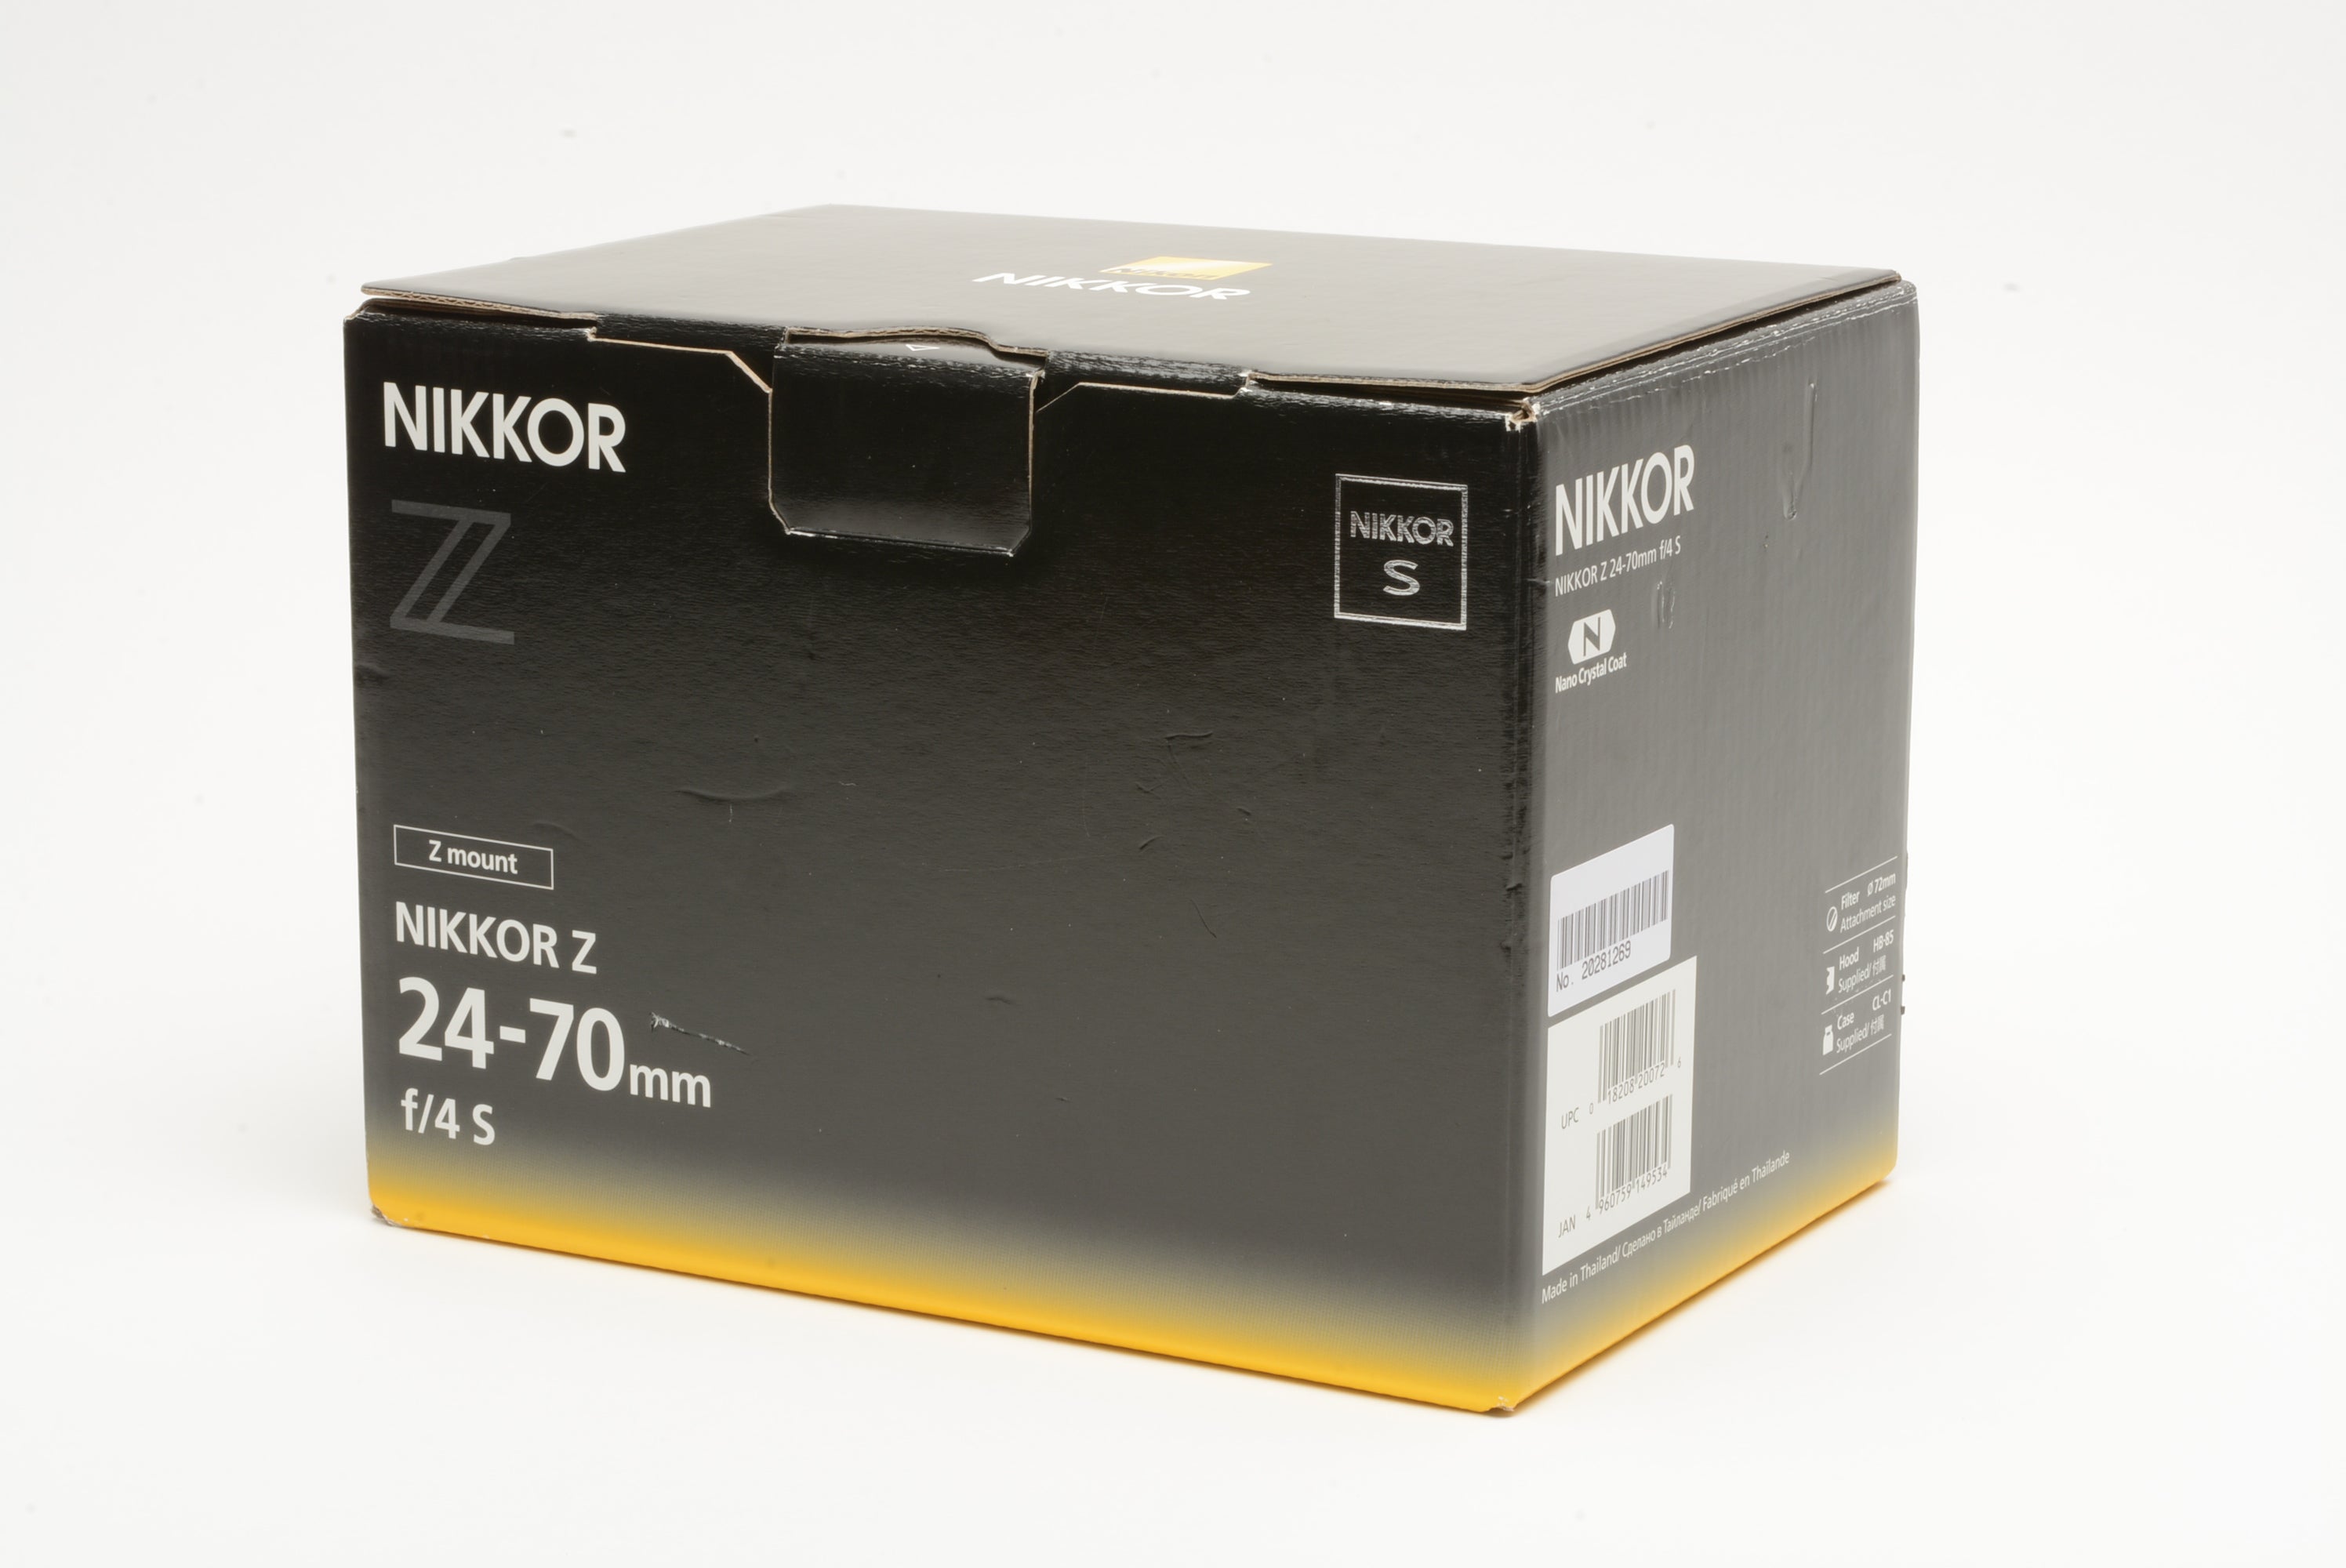 Nikon Nikkor Z 24-70mm f/4 S Z mount In Box- USA Version